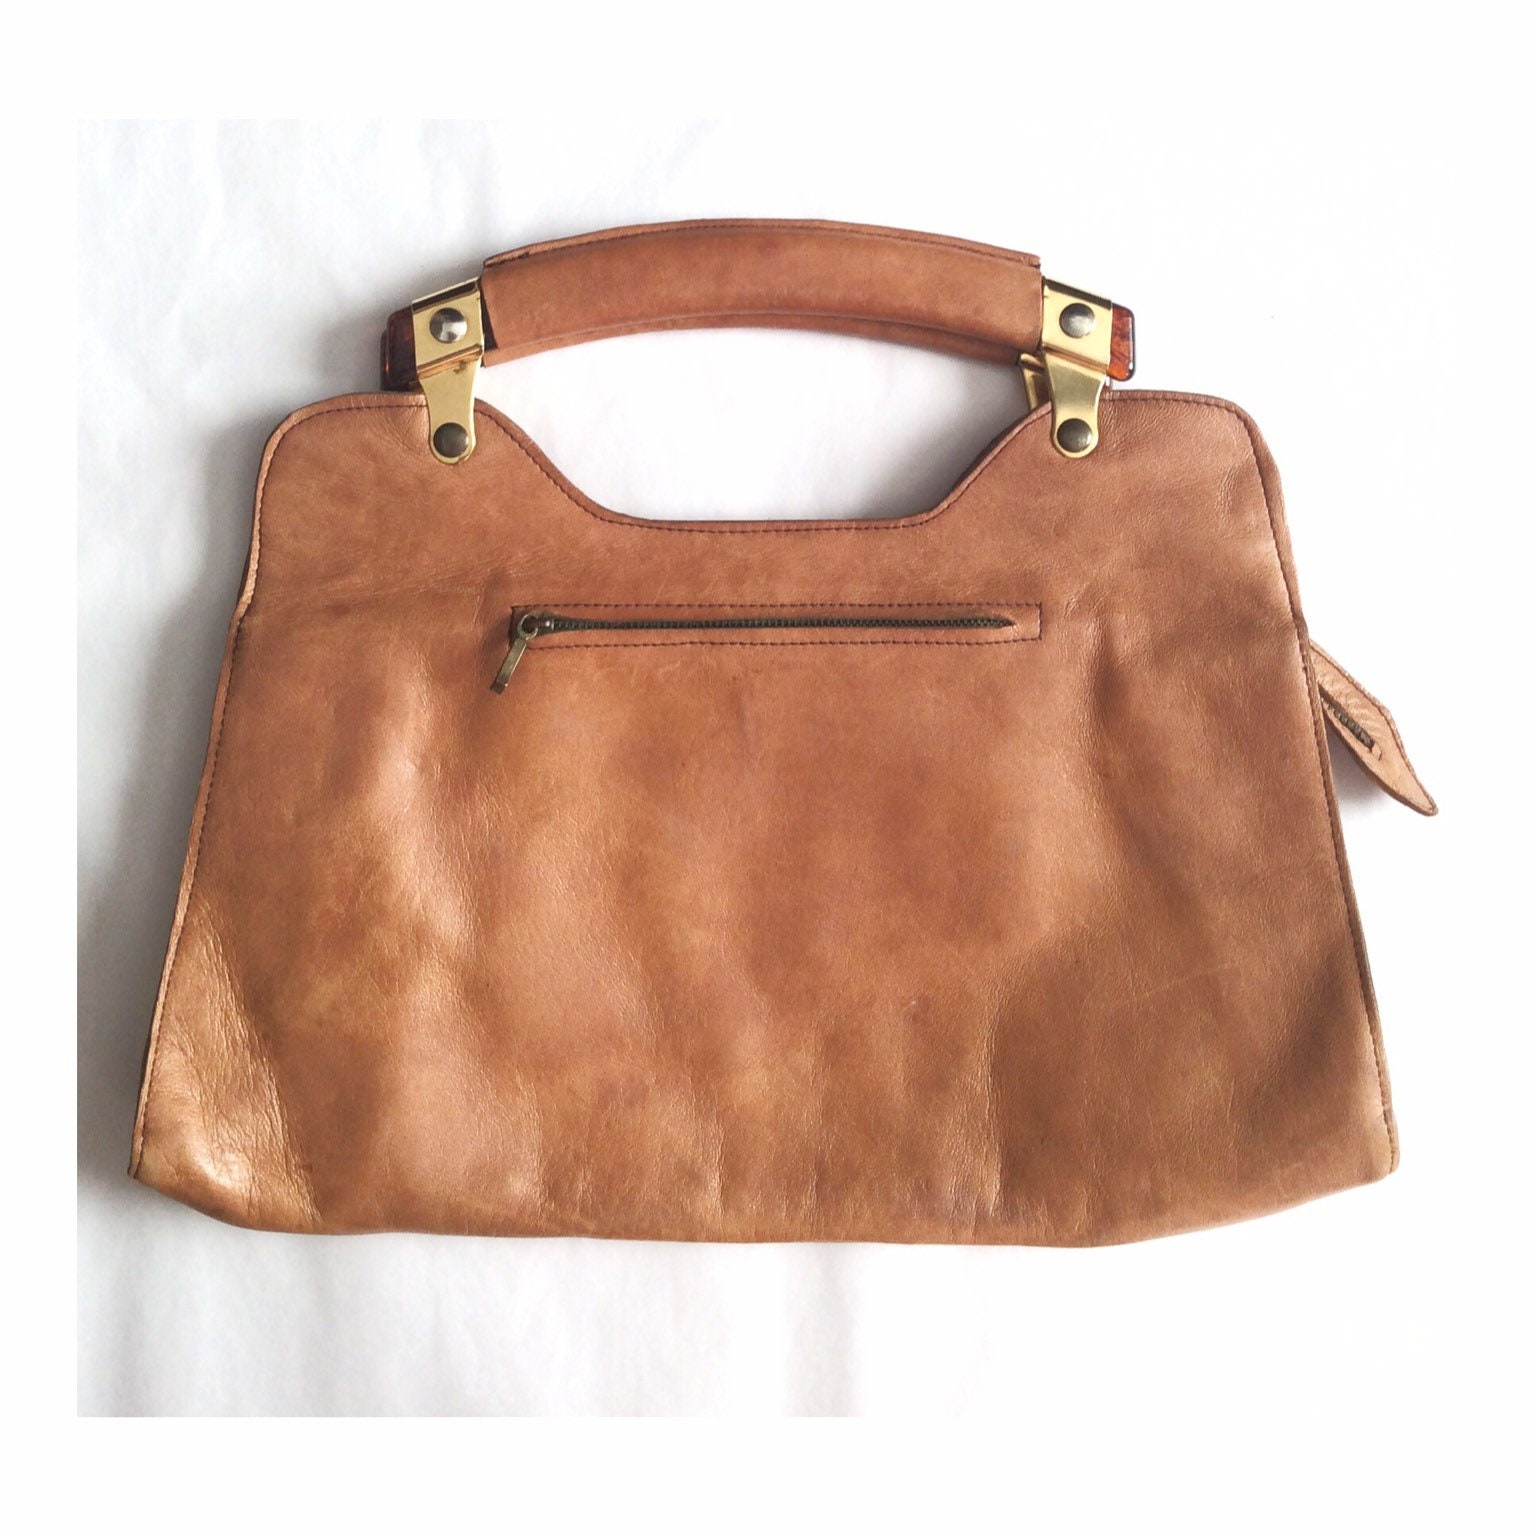 Vintage leather bag 70s handbag brown leather bag | Etsy